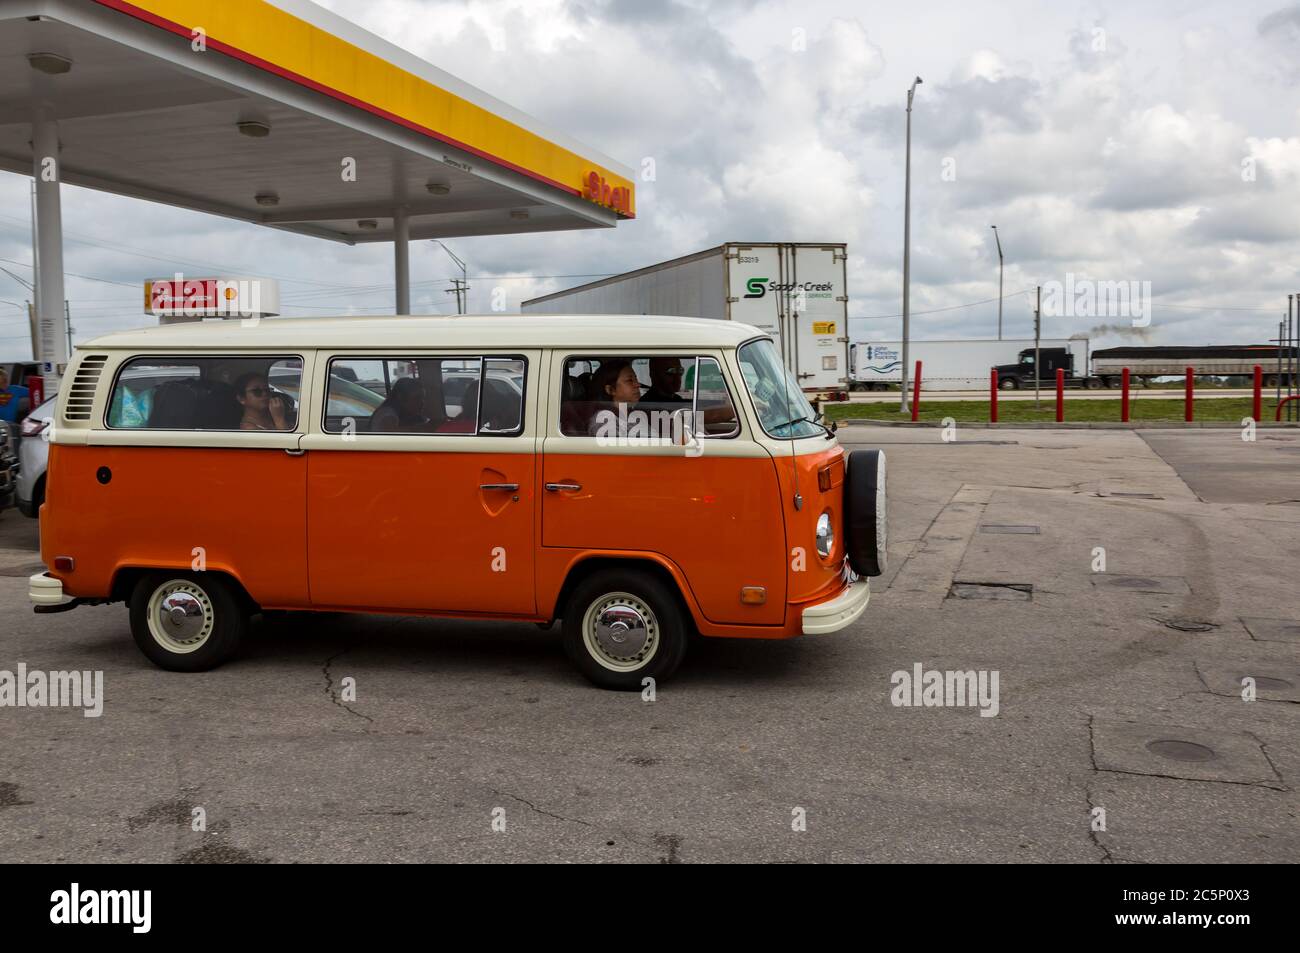 Nach dem Auftanken an einer Tankstelle am Lake Placid, Florida Shell, fährt ein orangefarbener Volkswagen Bus T2B Transporter weg. Stockfoto